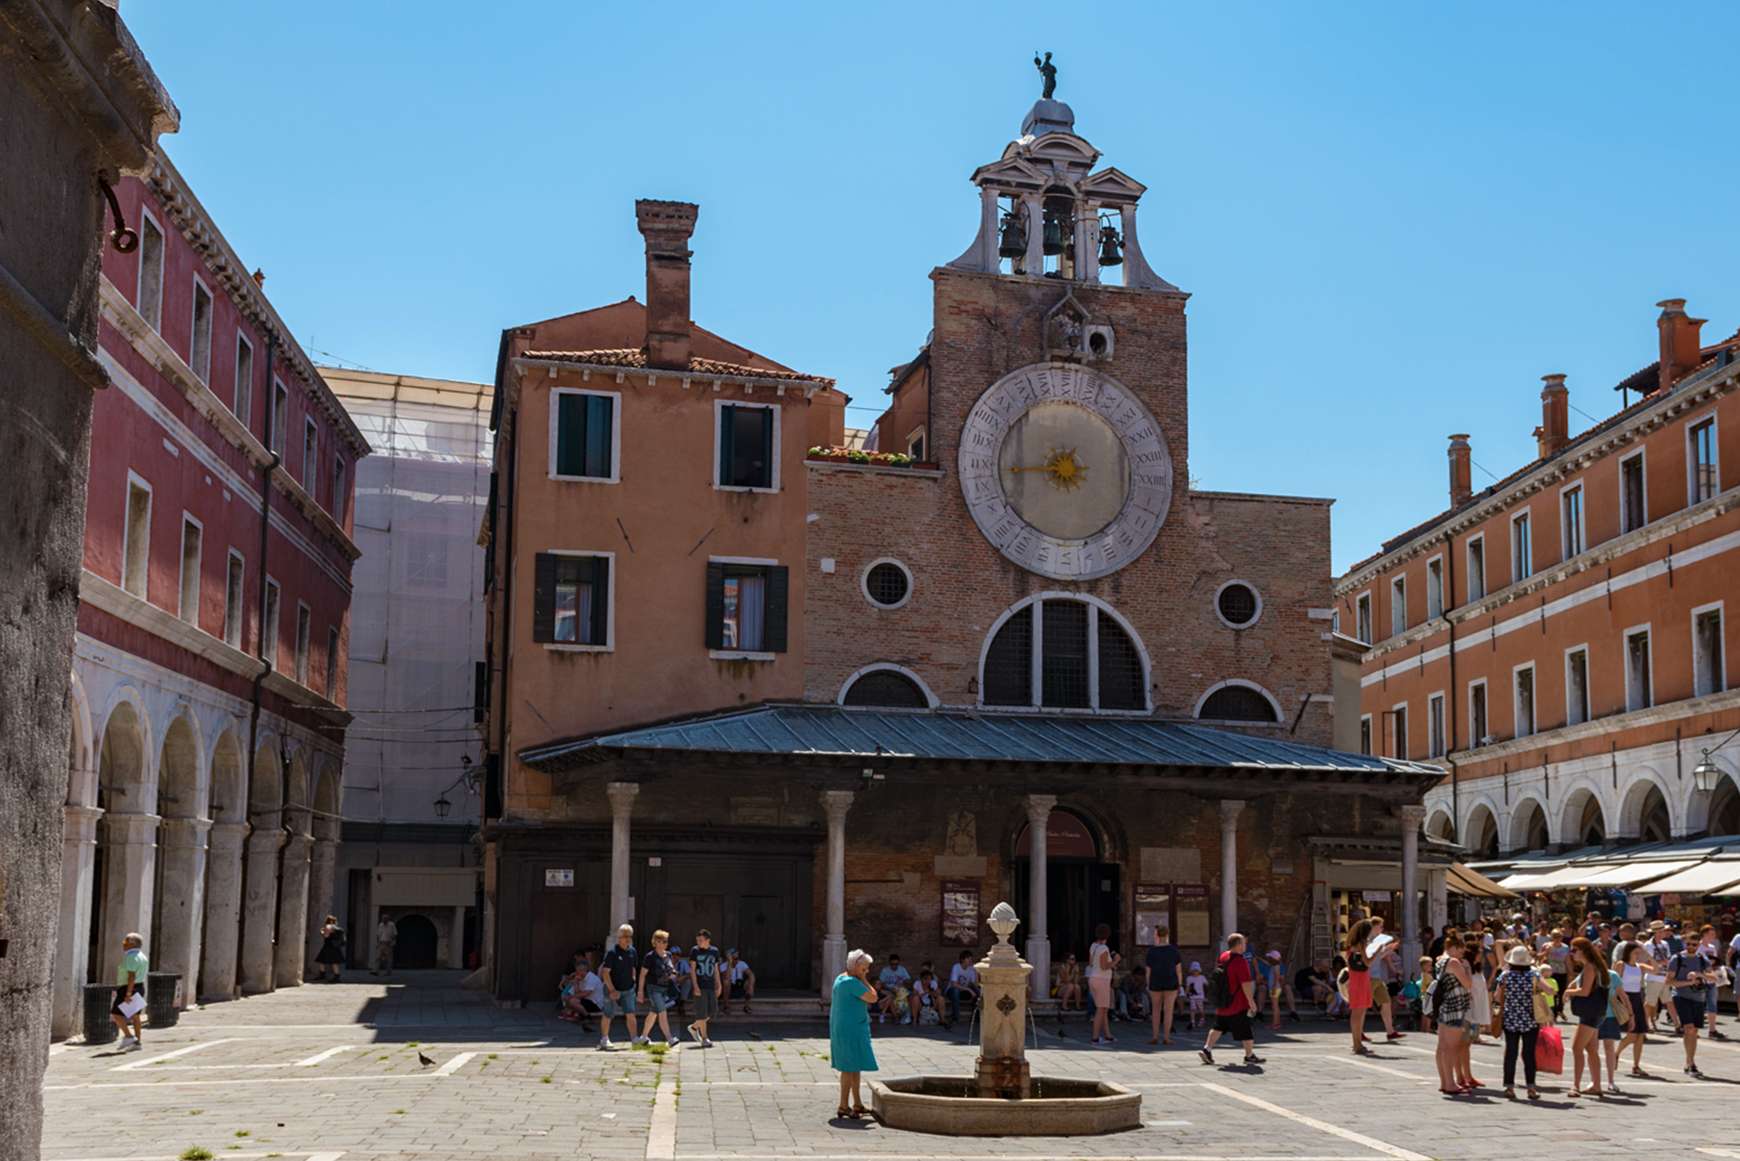 Face of clock of San Giacometto Church at the Rialto Bridge in Venice